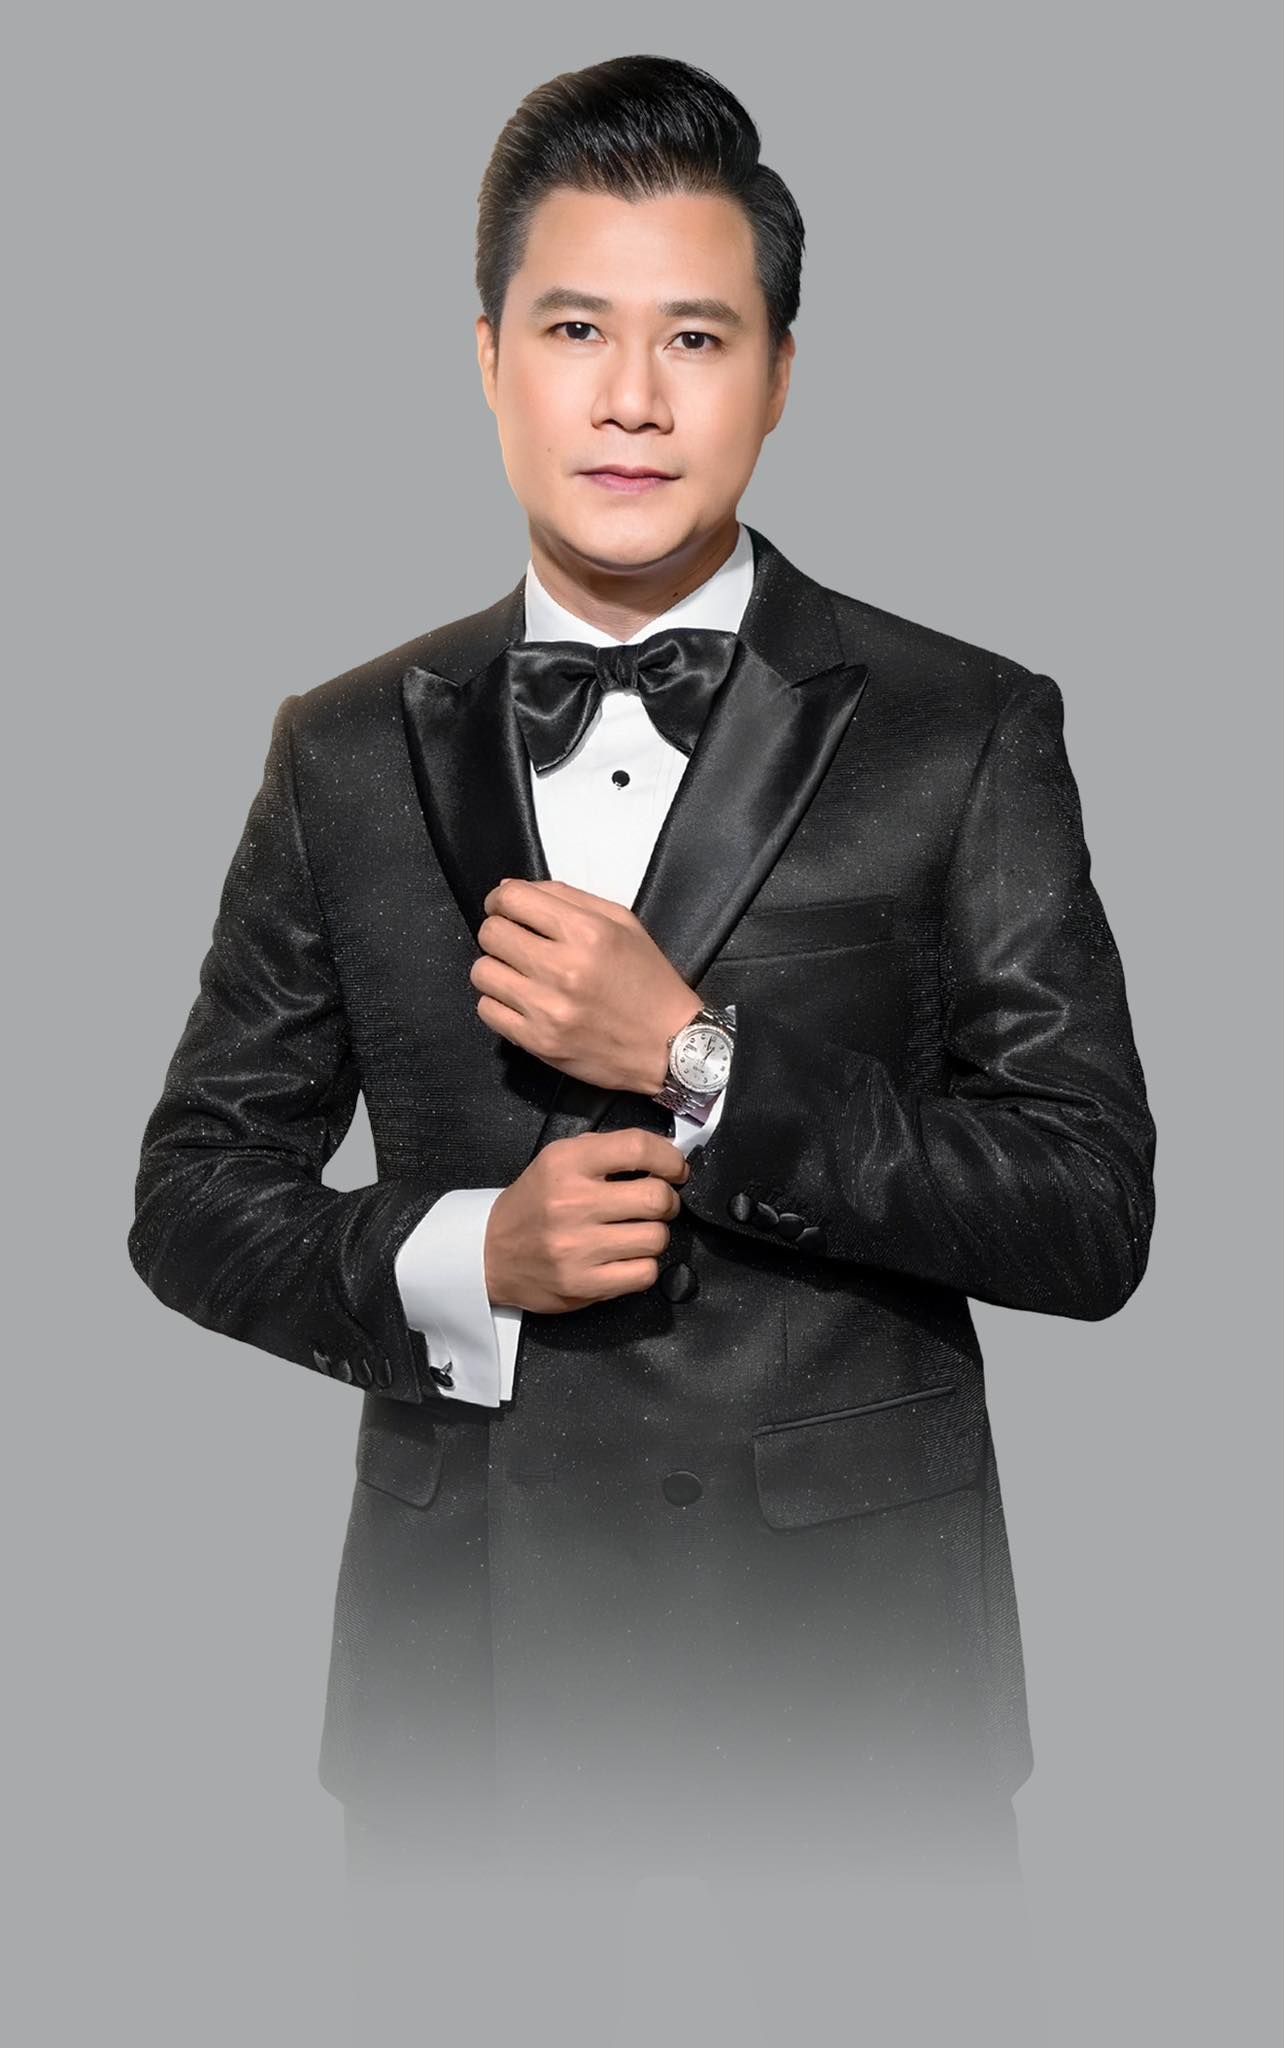 Ca sĩ Quang Dũng cũng sẽ góp mặt trong chương trình “Chạm 2“. Ảnh: BTC